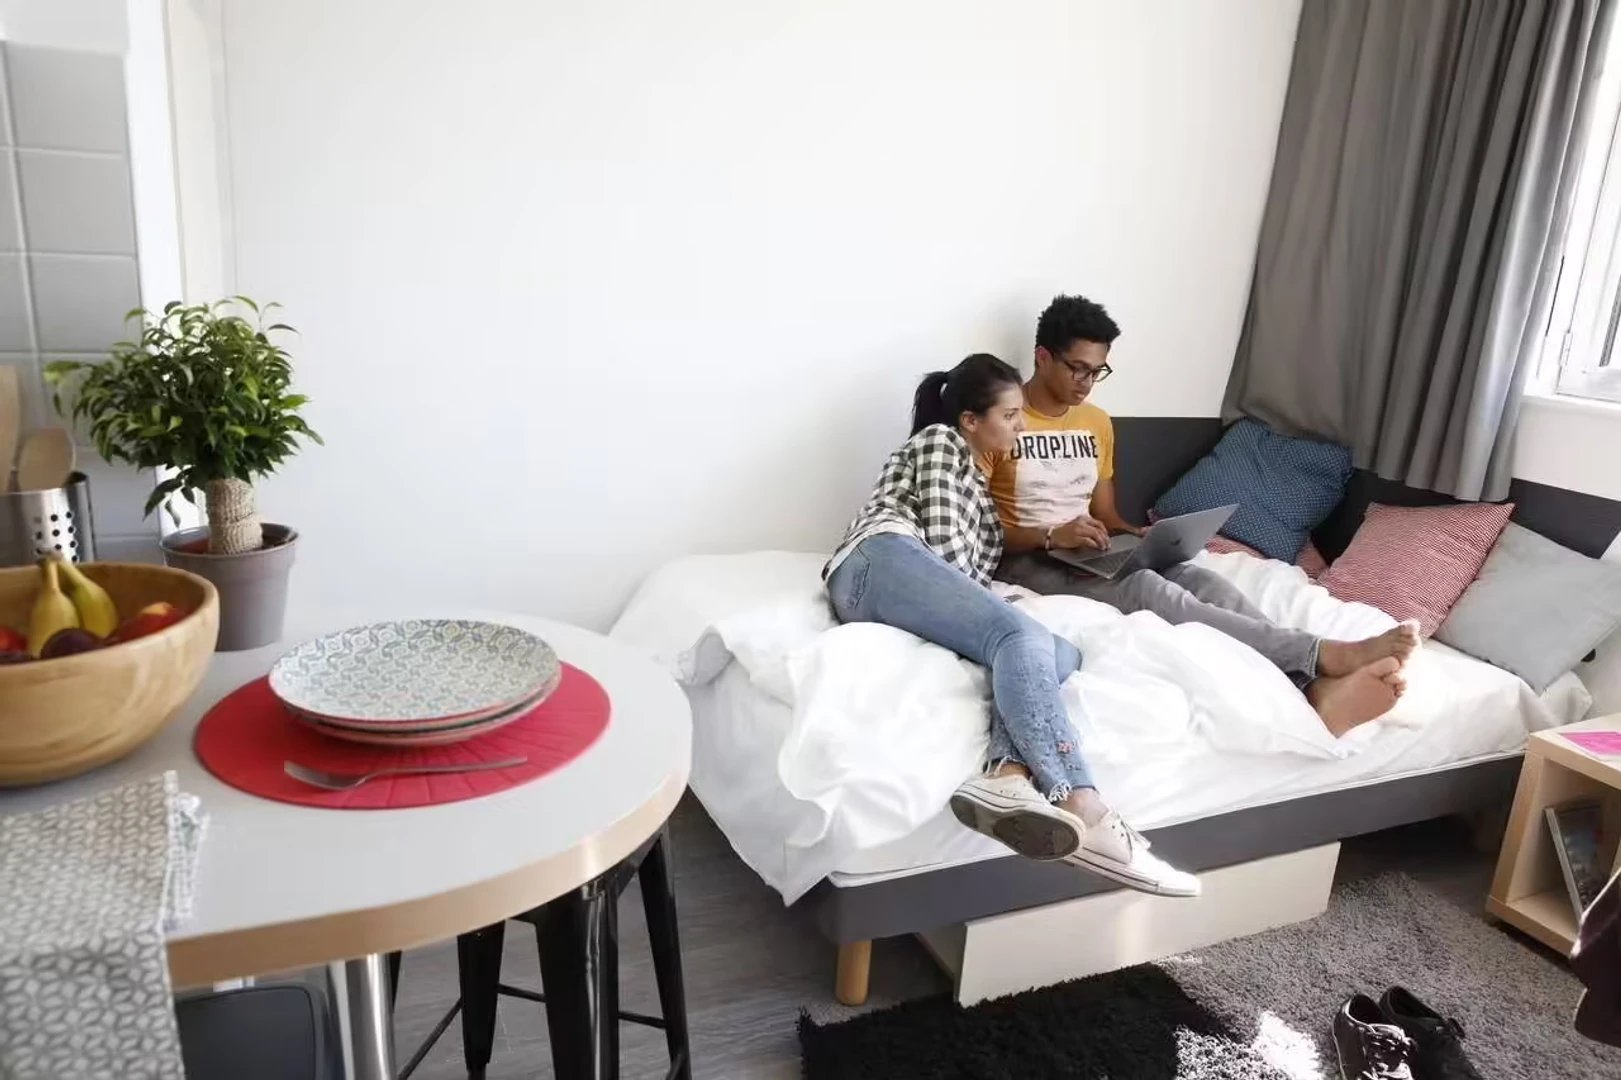 Chambre à louer dans un appartement en colocation à Rennes